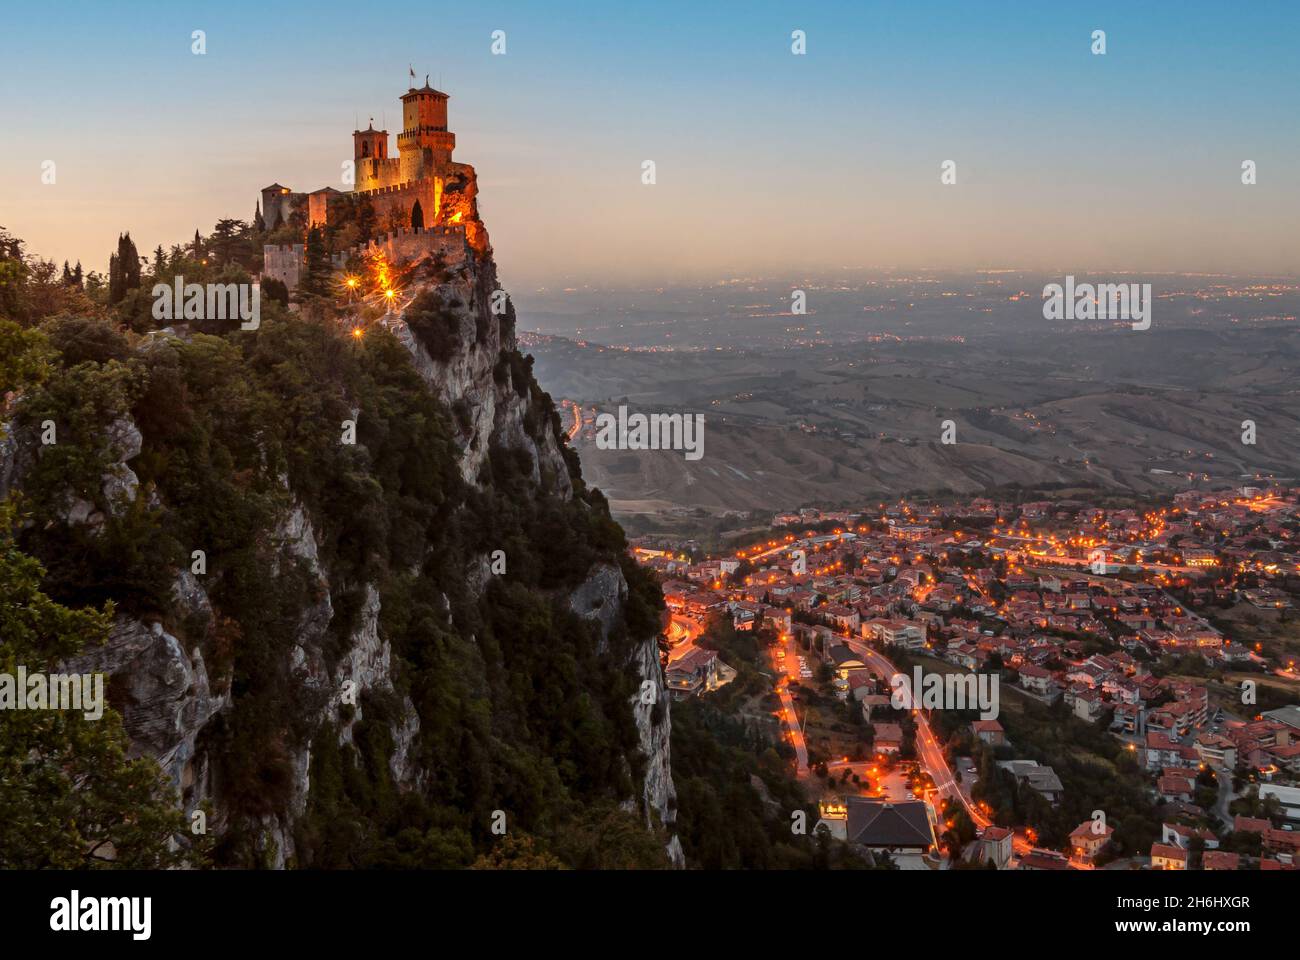 Der Turm La Guaita, der älteste der drei Türme auf dem Gipfel des Monte Titano in San Marino in der Abenddämmerung, Republik San Marino Stockfoto